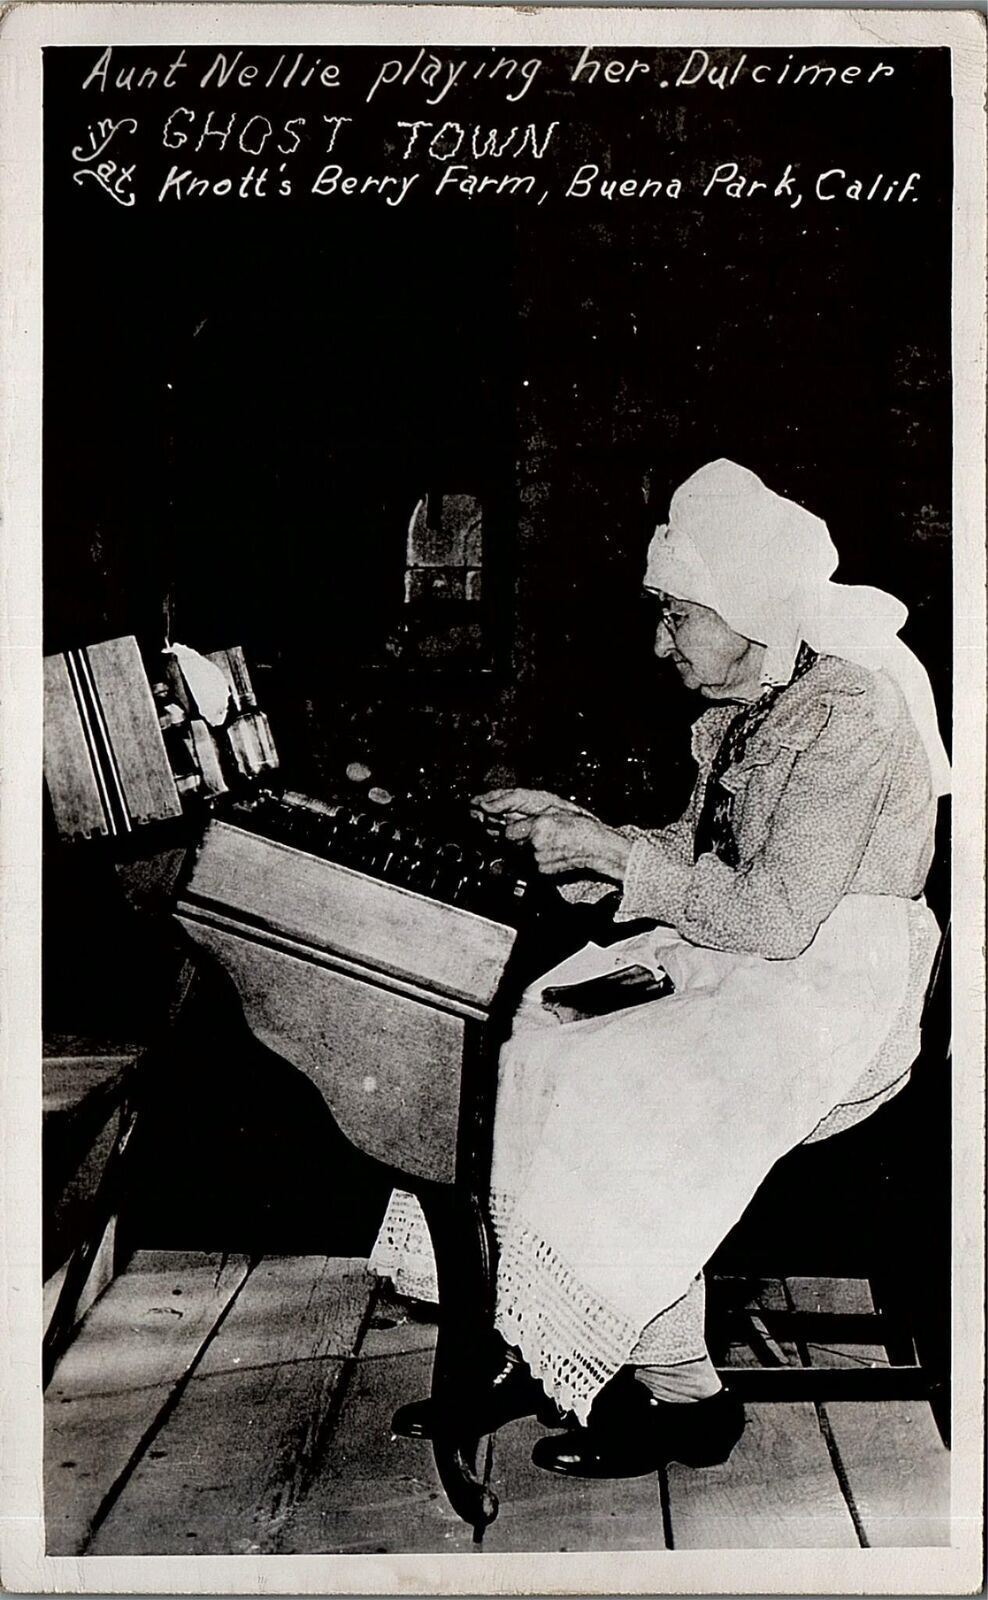 1951 BUENA PARK CA KNOTT'S BERRY FARM AUNT NELLIE DULCIMER RPPC POSTCARD 36-195